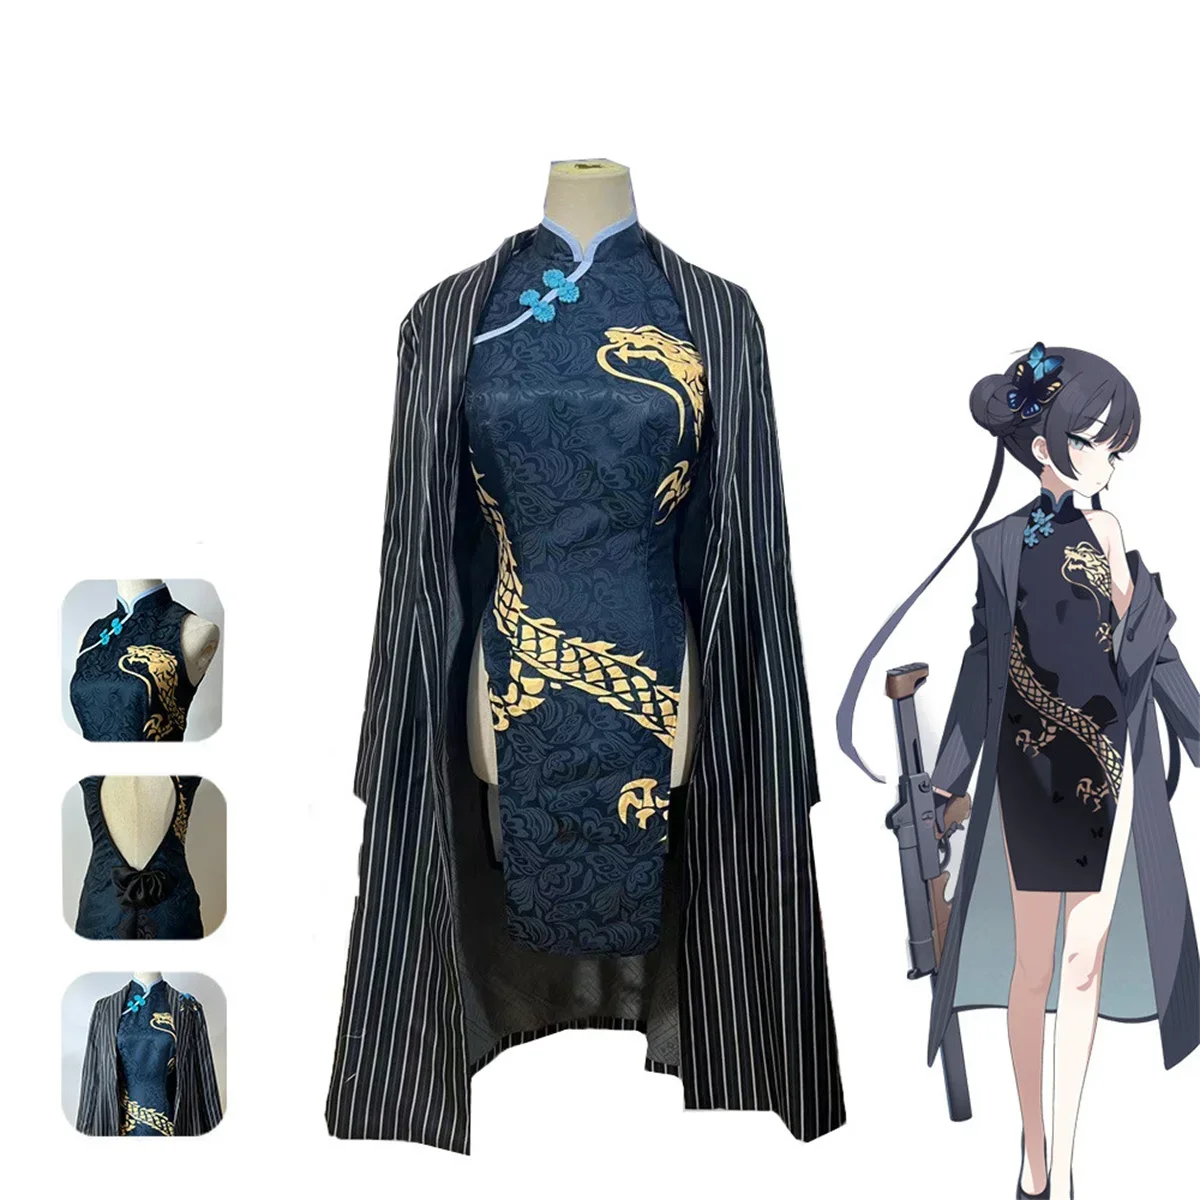 

Костюм для косплея кисаки из аниме «Голубой архив», верхняя одежда, костюм Чонсам в стиле Ципао, полный комплект, наряд для Хэллоуина и вечеринки